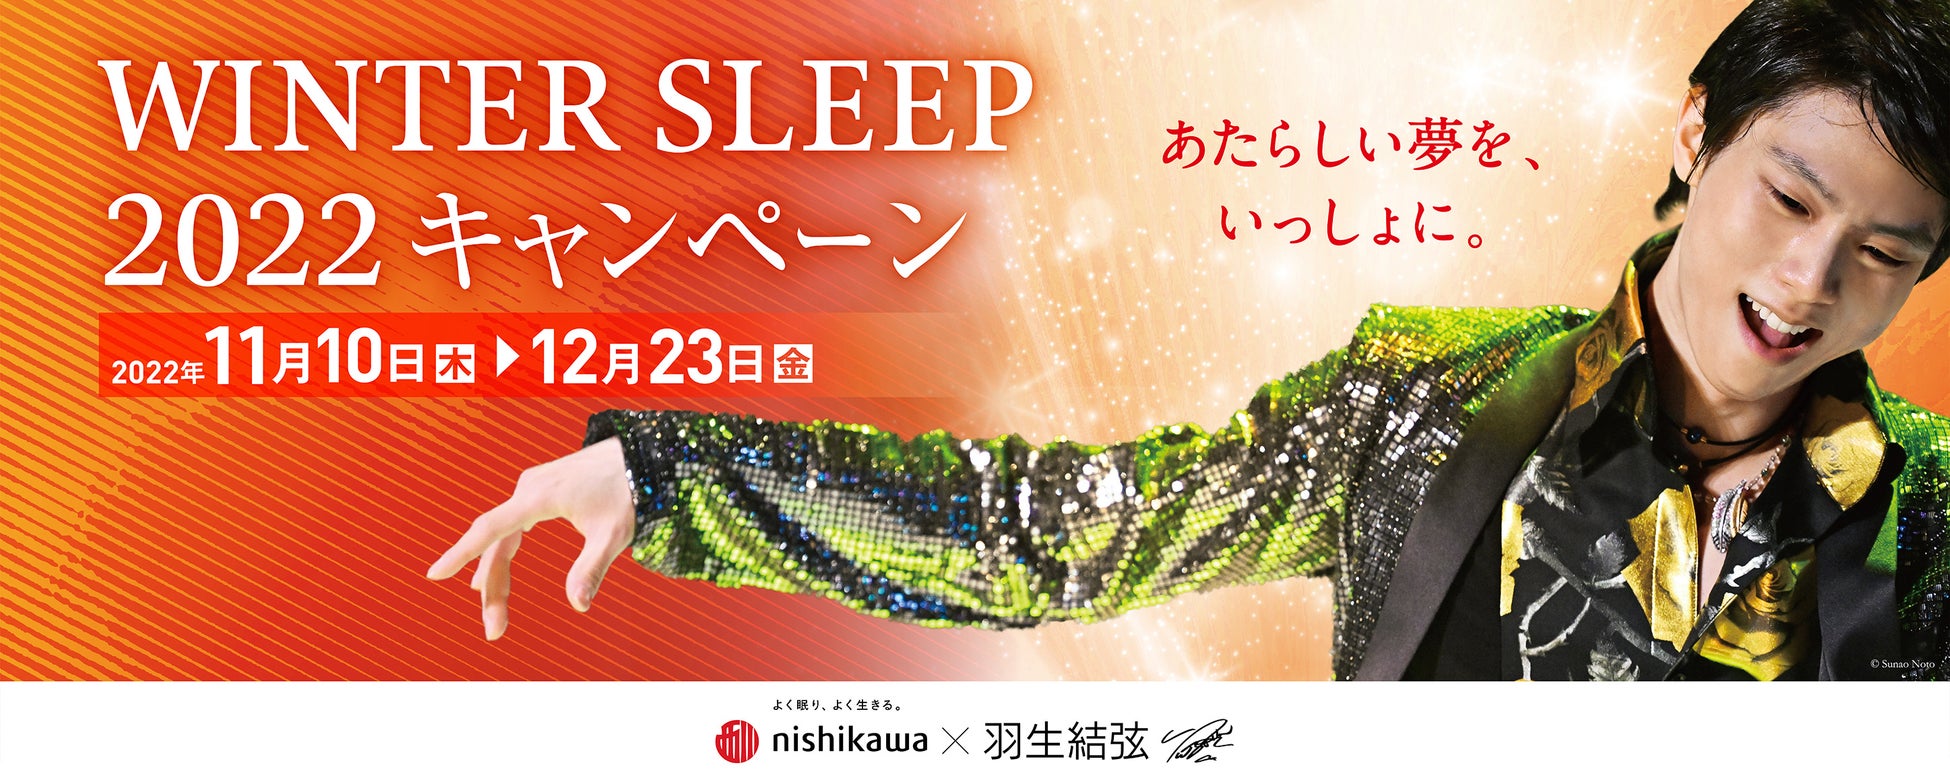 羽生結弦さんを起用した『西川 WINTER SLEEP 2022 キャンペーン』を11 